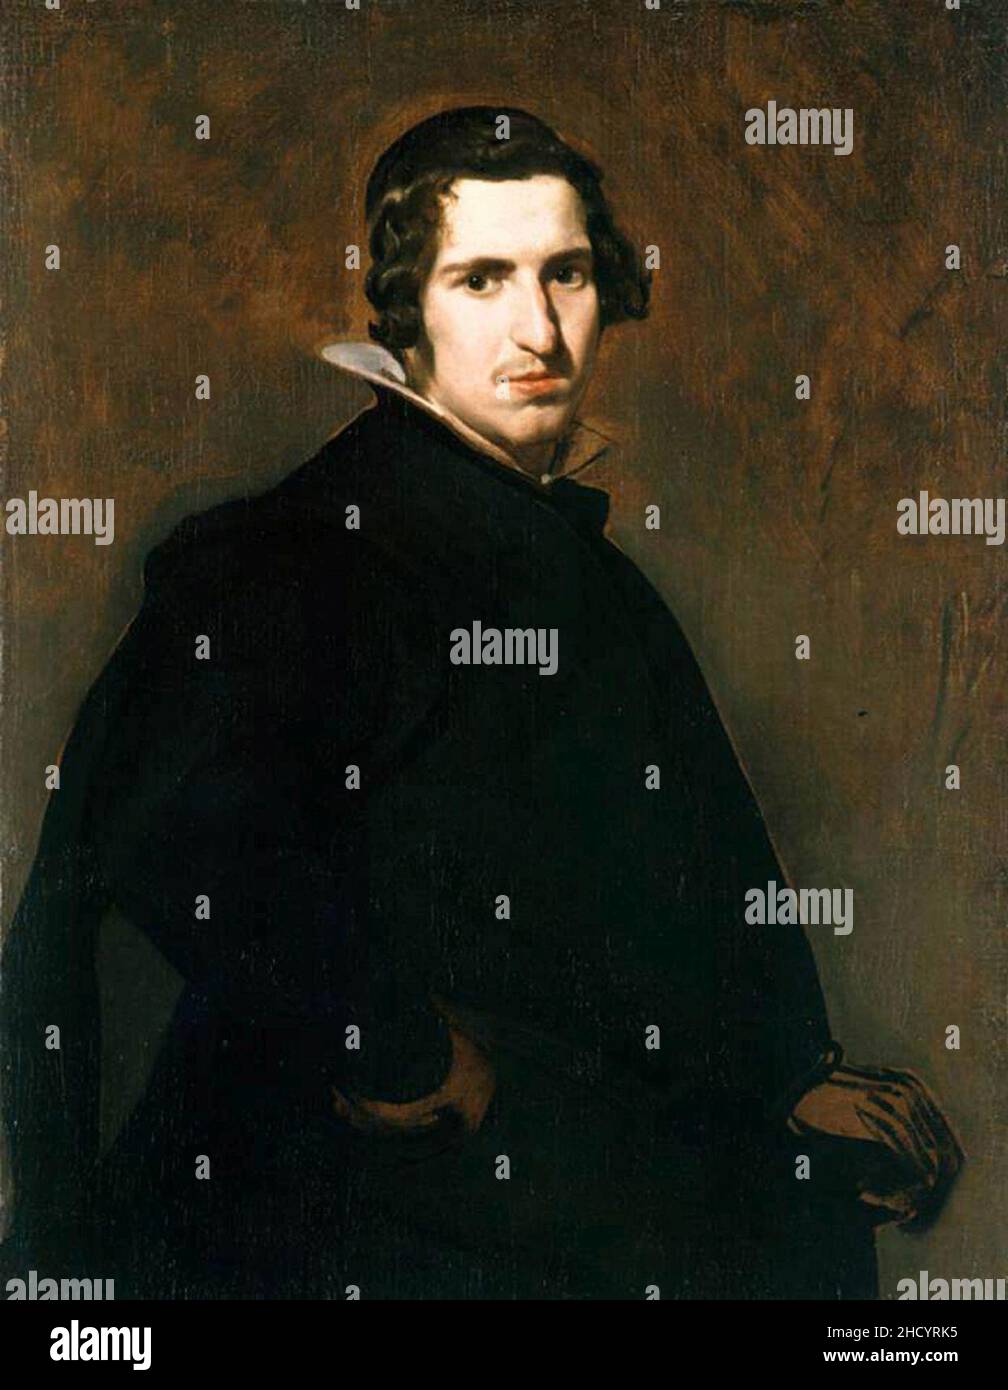 Retrato inacabado de un hombre joven, by Diego Velázquez. Stock Photo